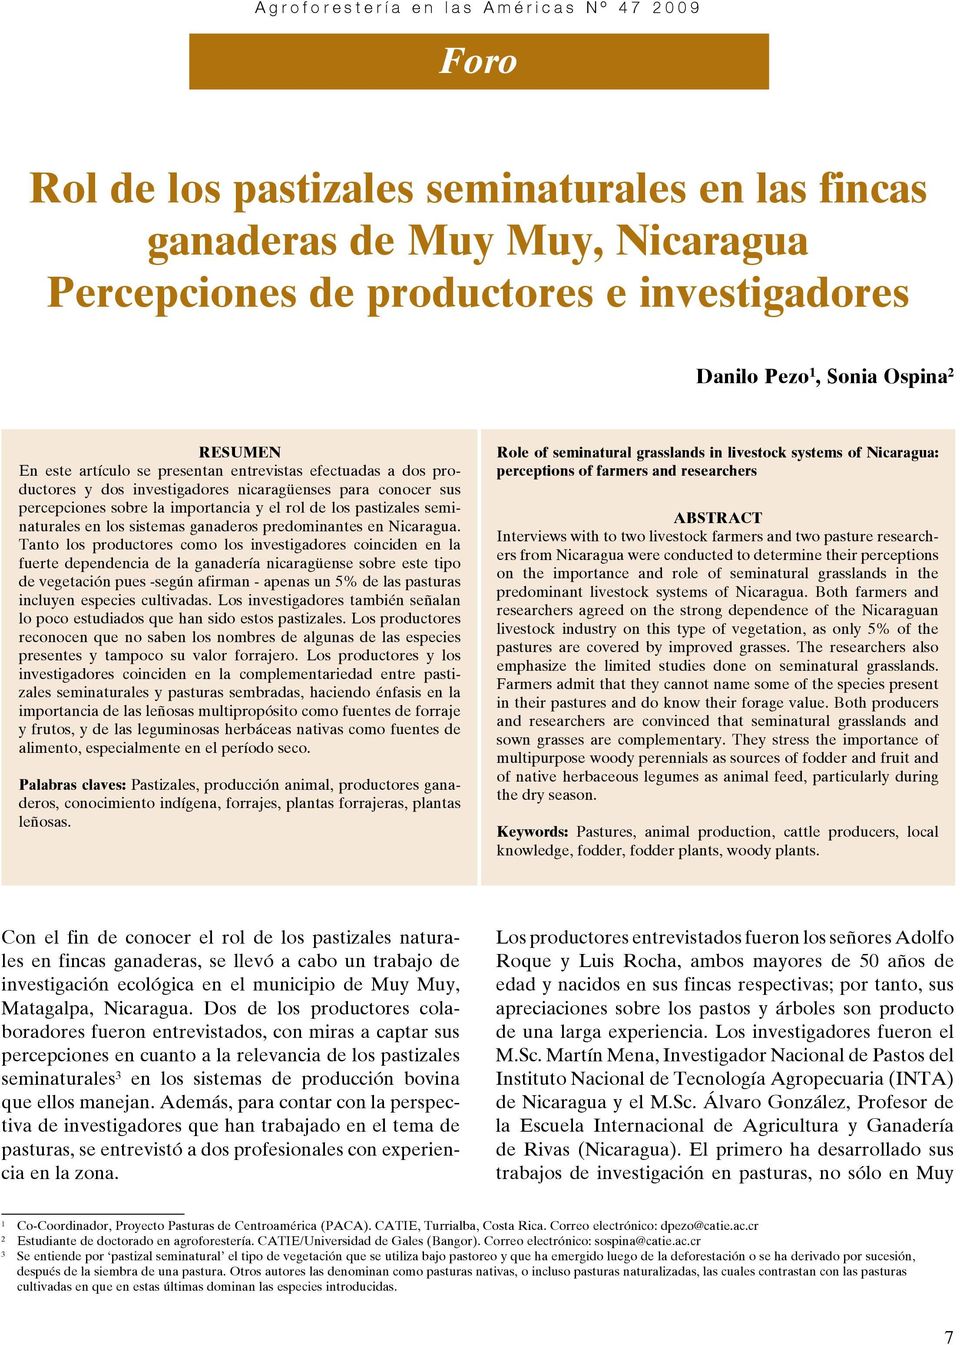 predominantes en Nicaragua.